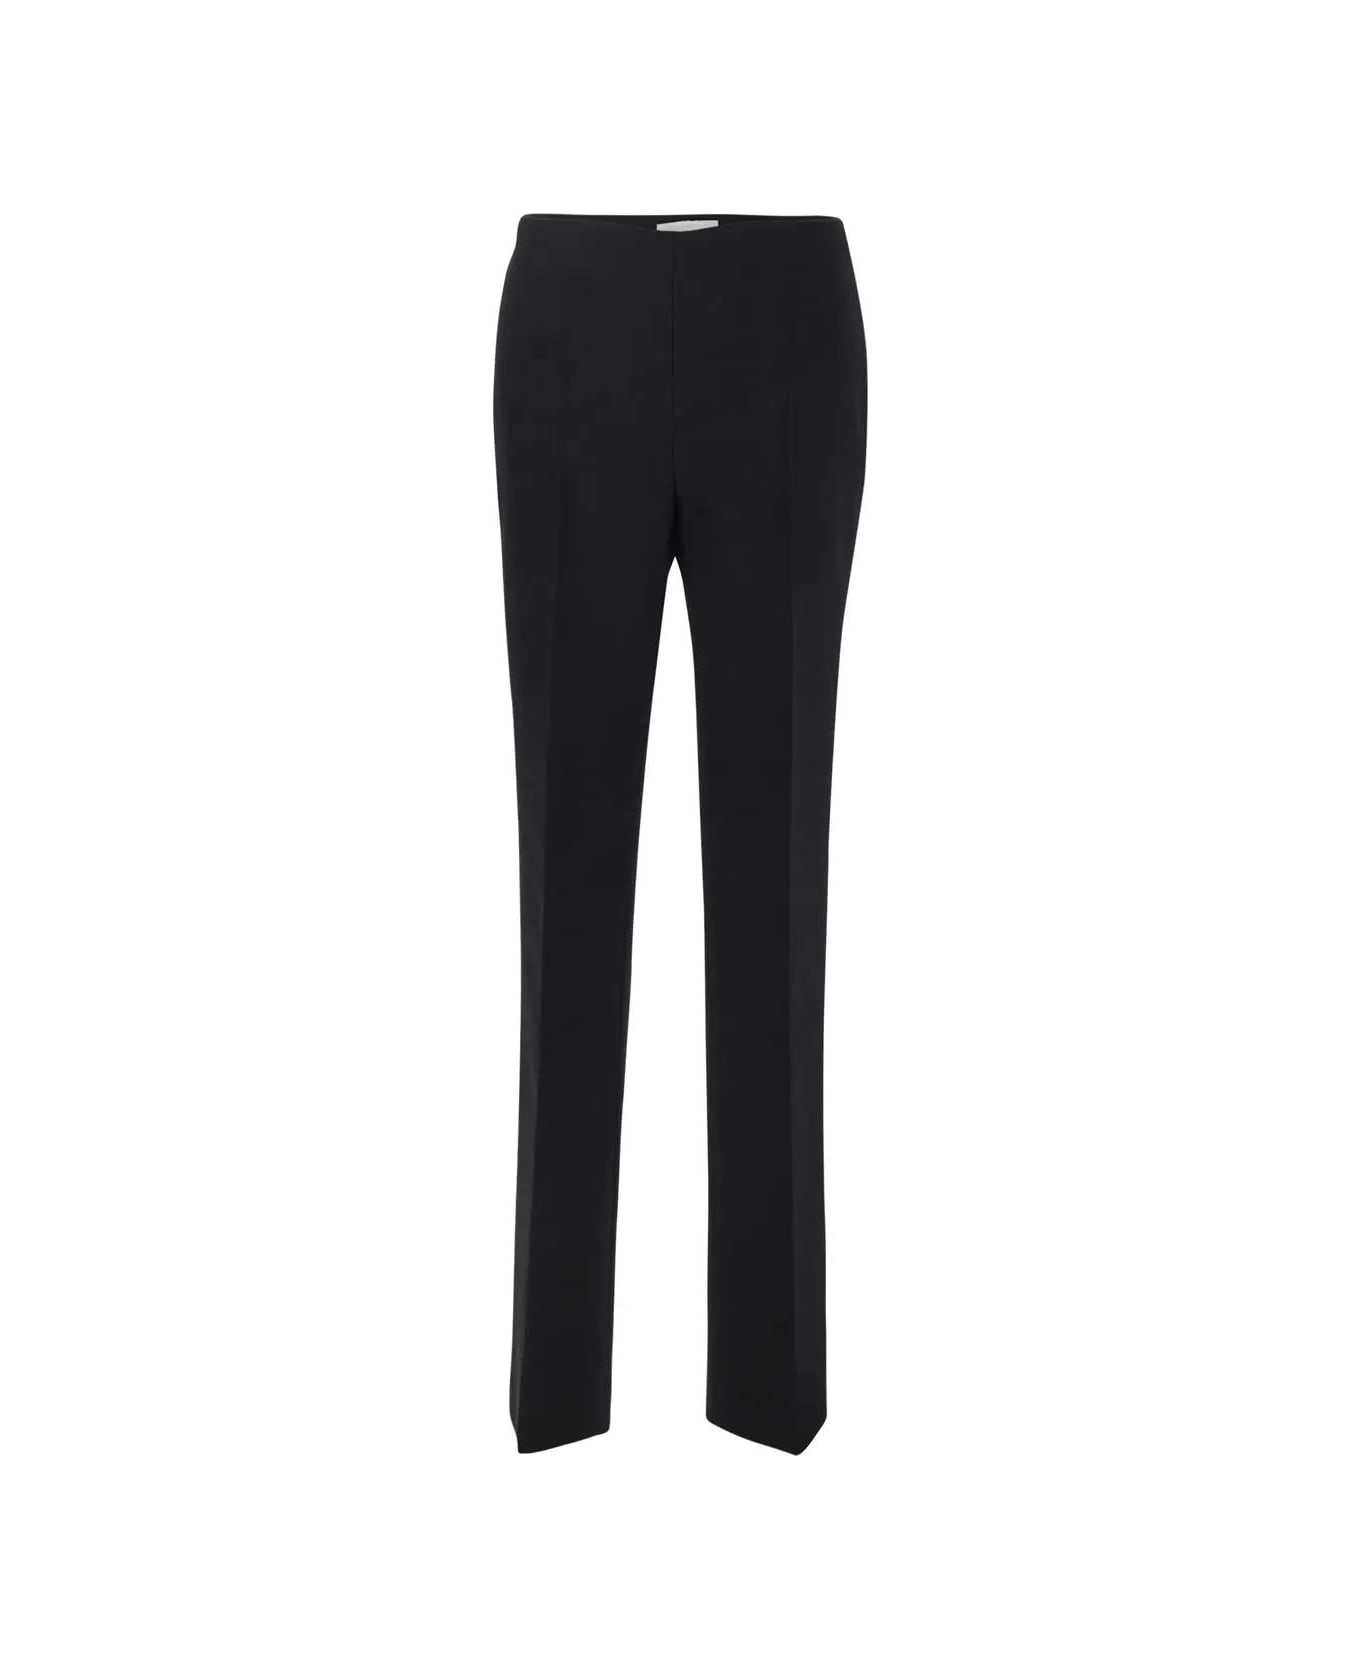 Ferragamo Tailored Trousers - Black